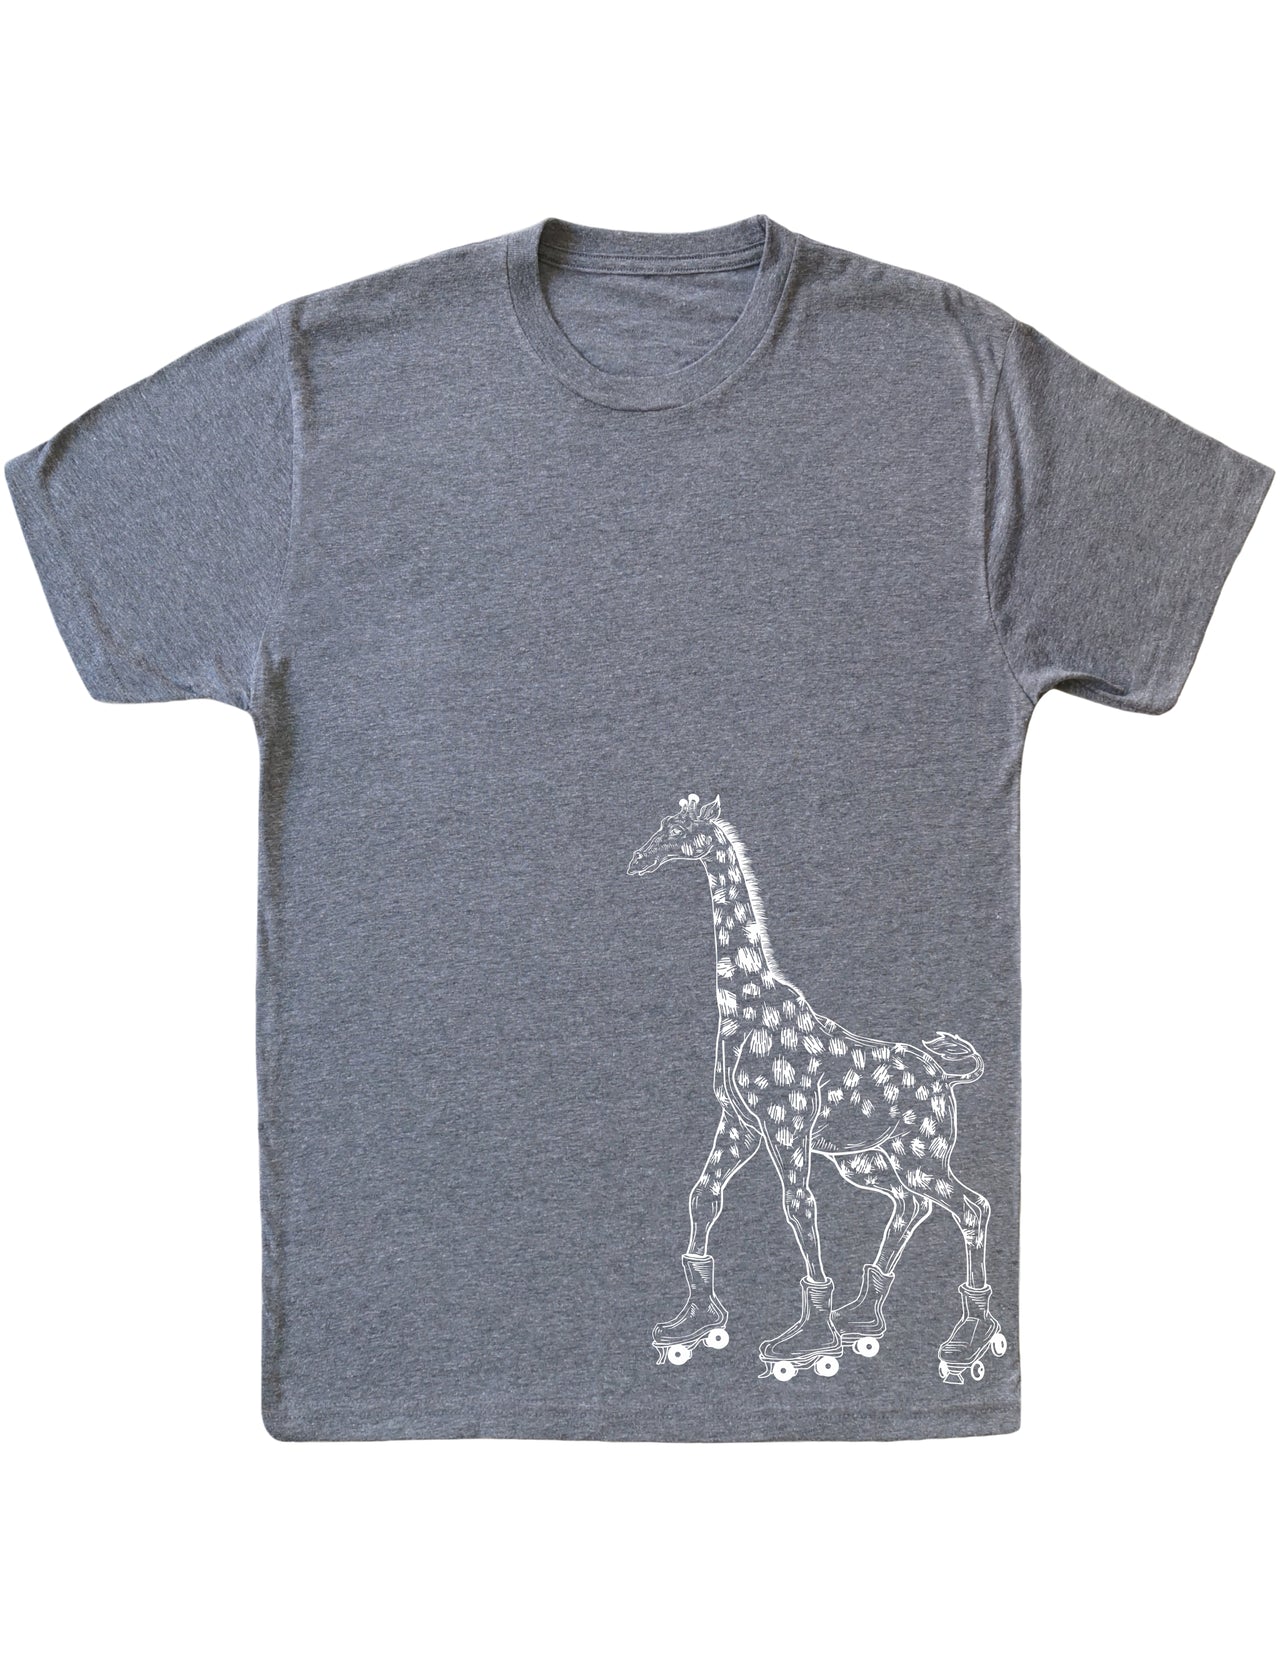 SEEMBO Giraffe Skater Funny Skating Roller Skates Men Tri-Blend T-Shirt Side Print